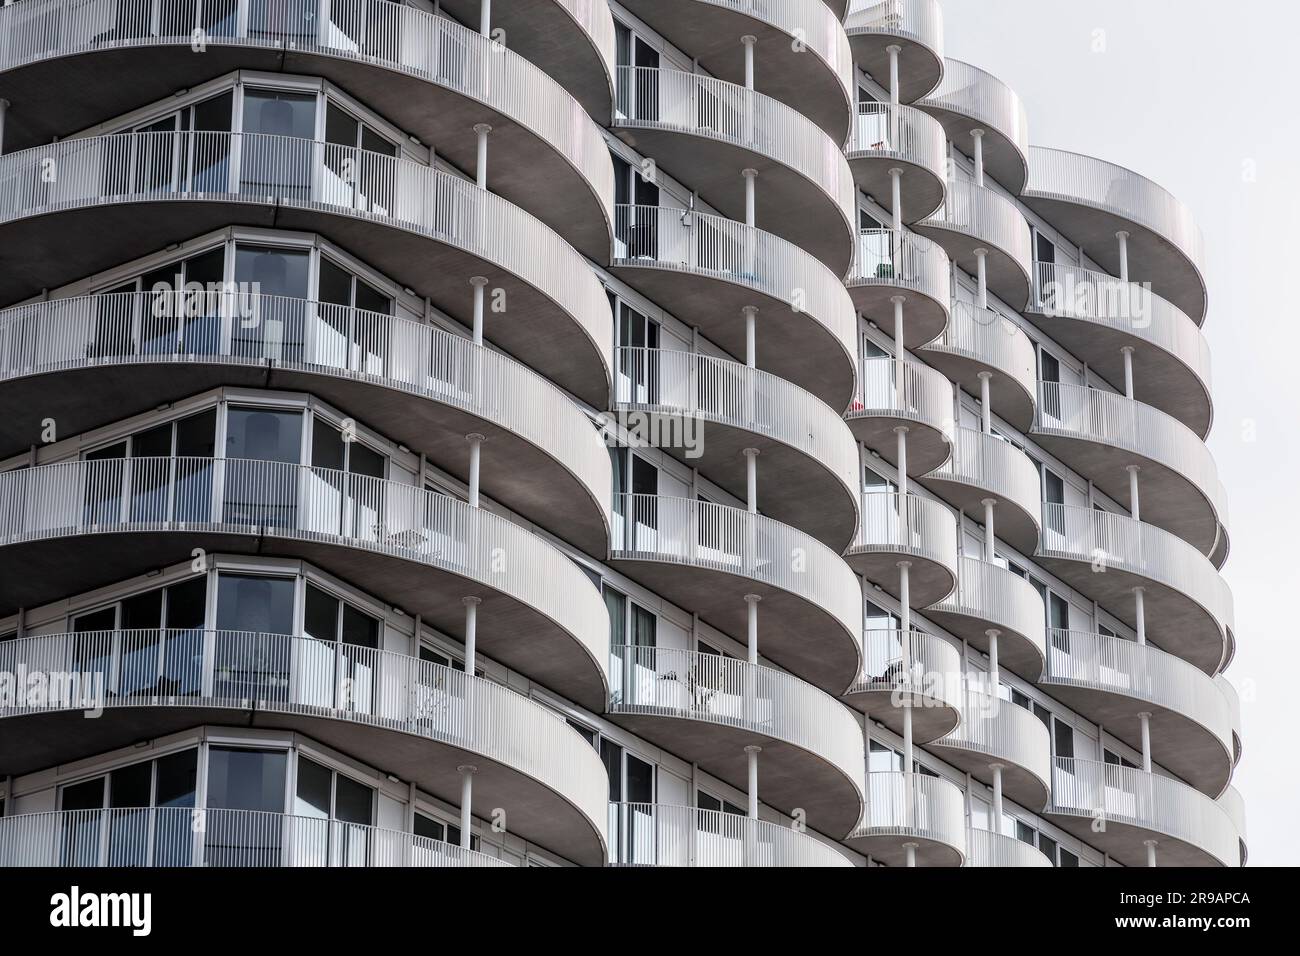 Modernes Wohnungsgebäude mit halbrunden Balkonen, kreative Architektur in Rotterdam, NL. Stockfoto